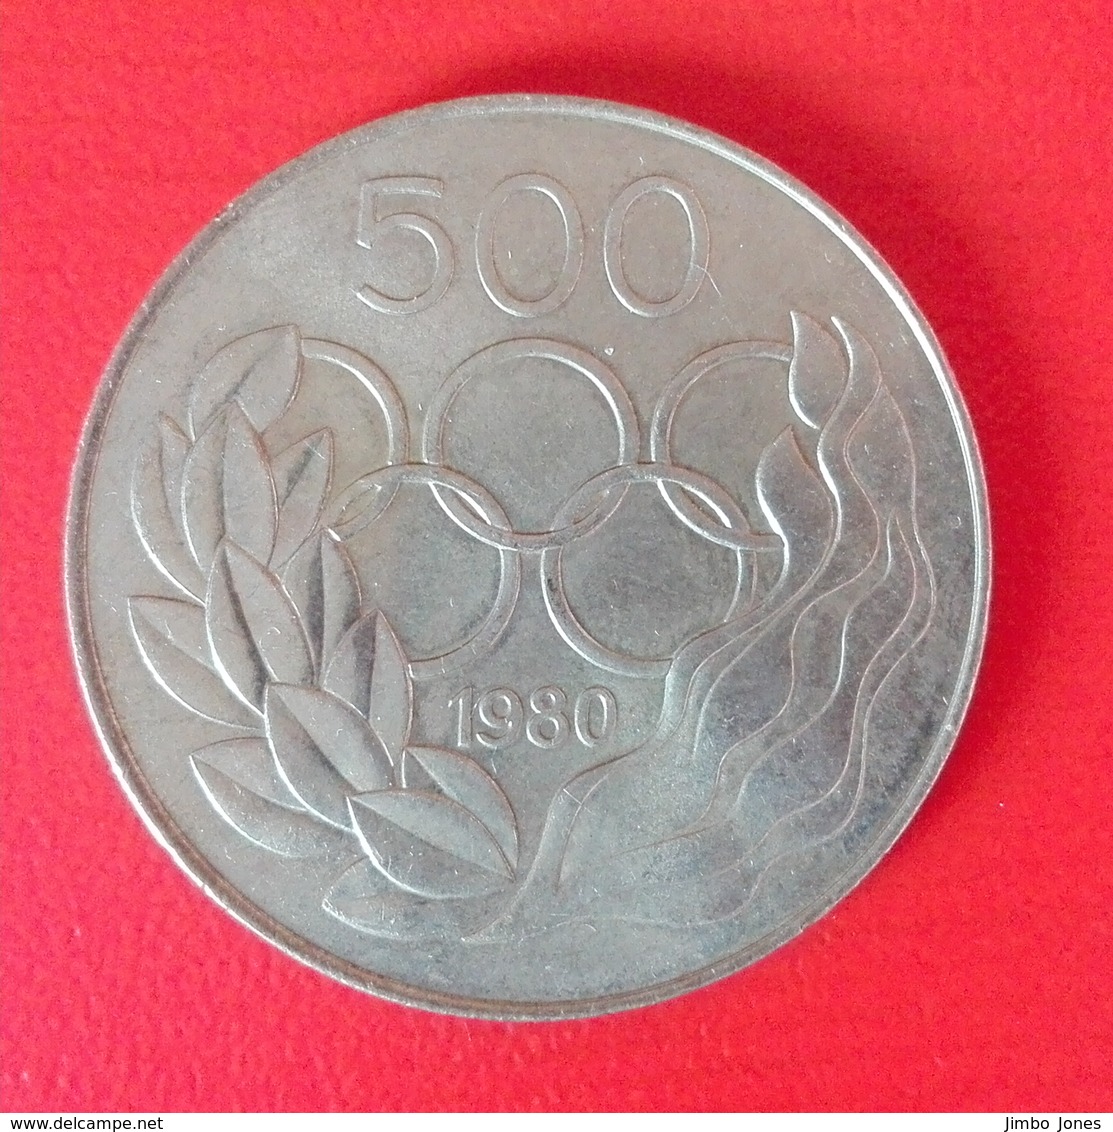 500 Mil Münze Aus Zypern Von 1980 (sehr Schön) - Zypern